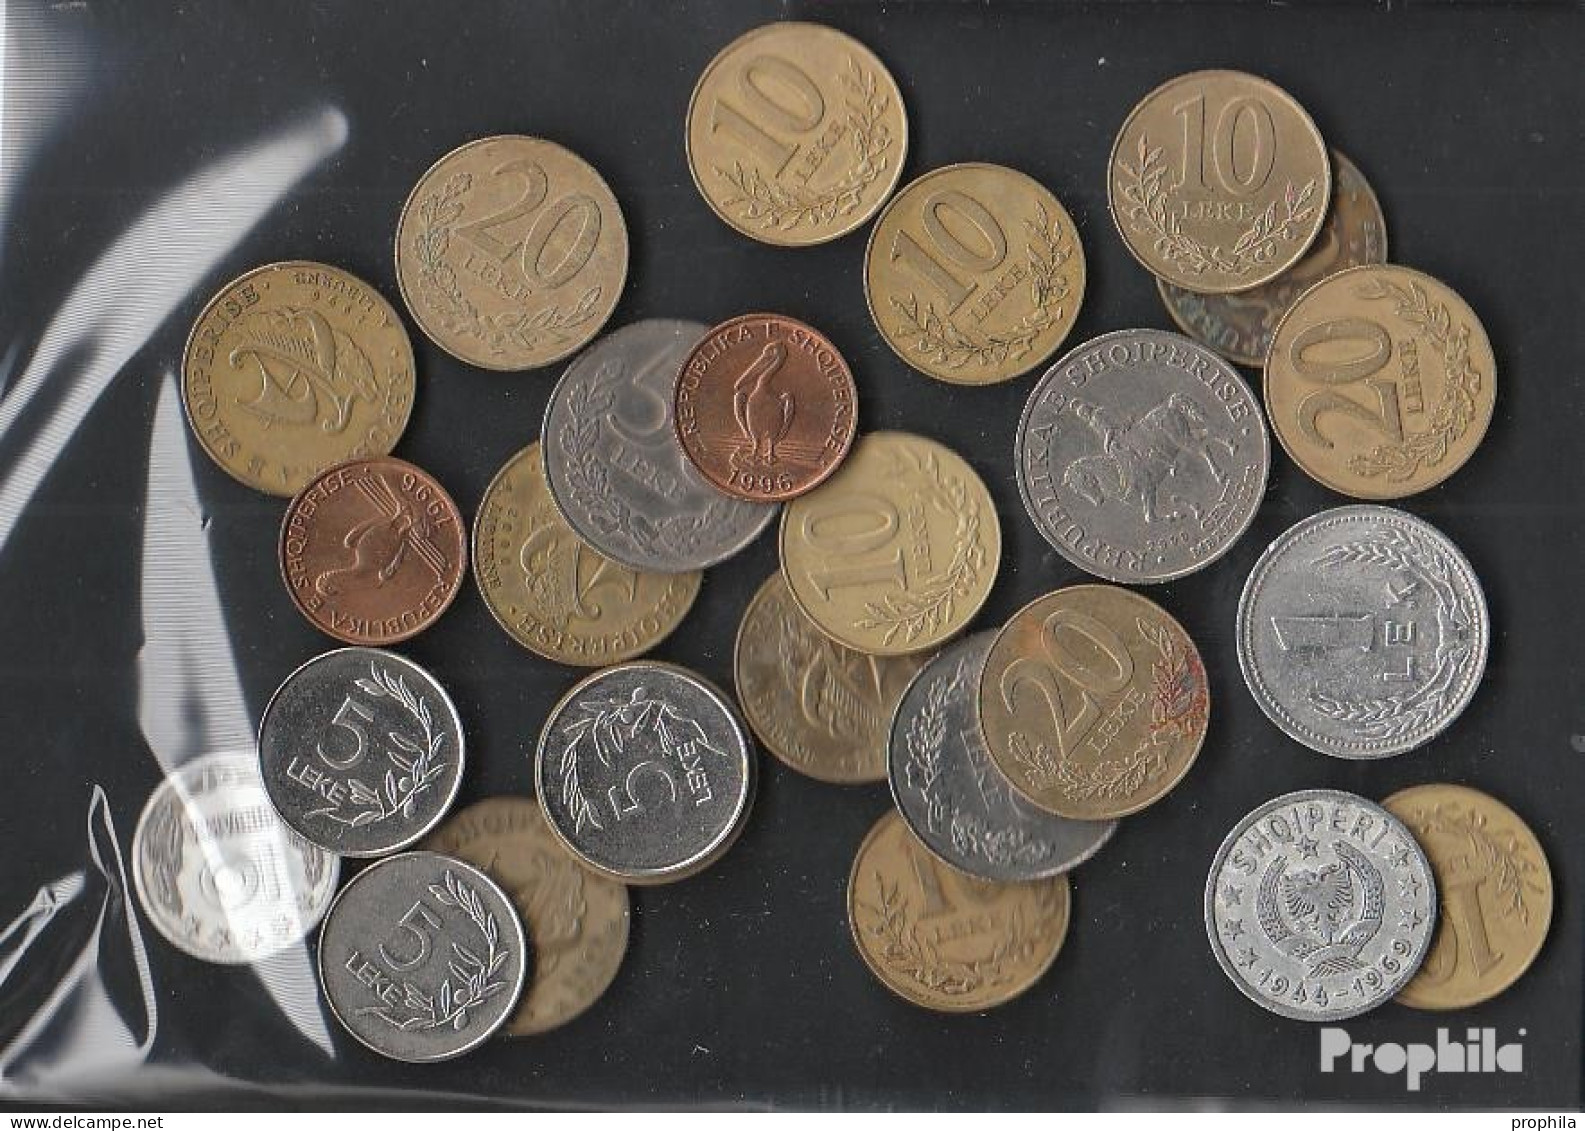 Albanien 100 Gramm Münzkiloware - Mezclas - Monedas